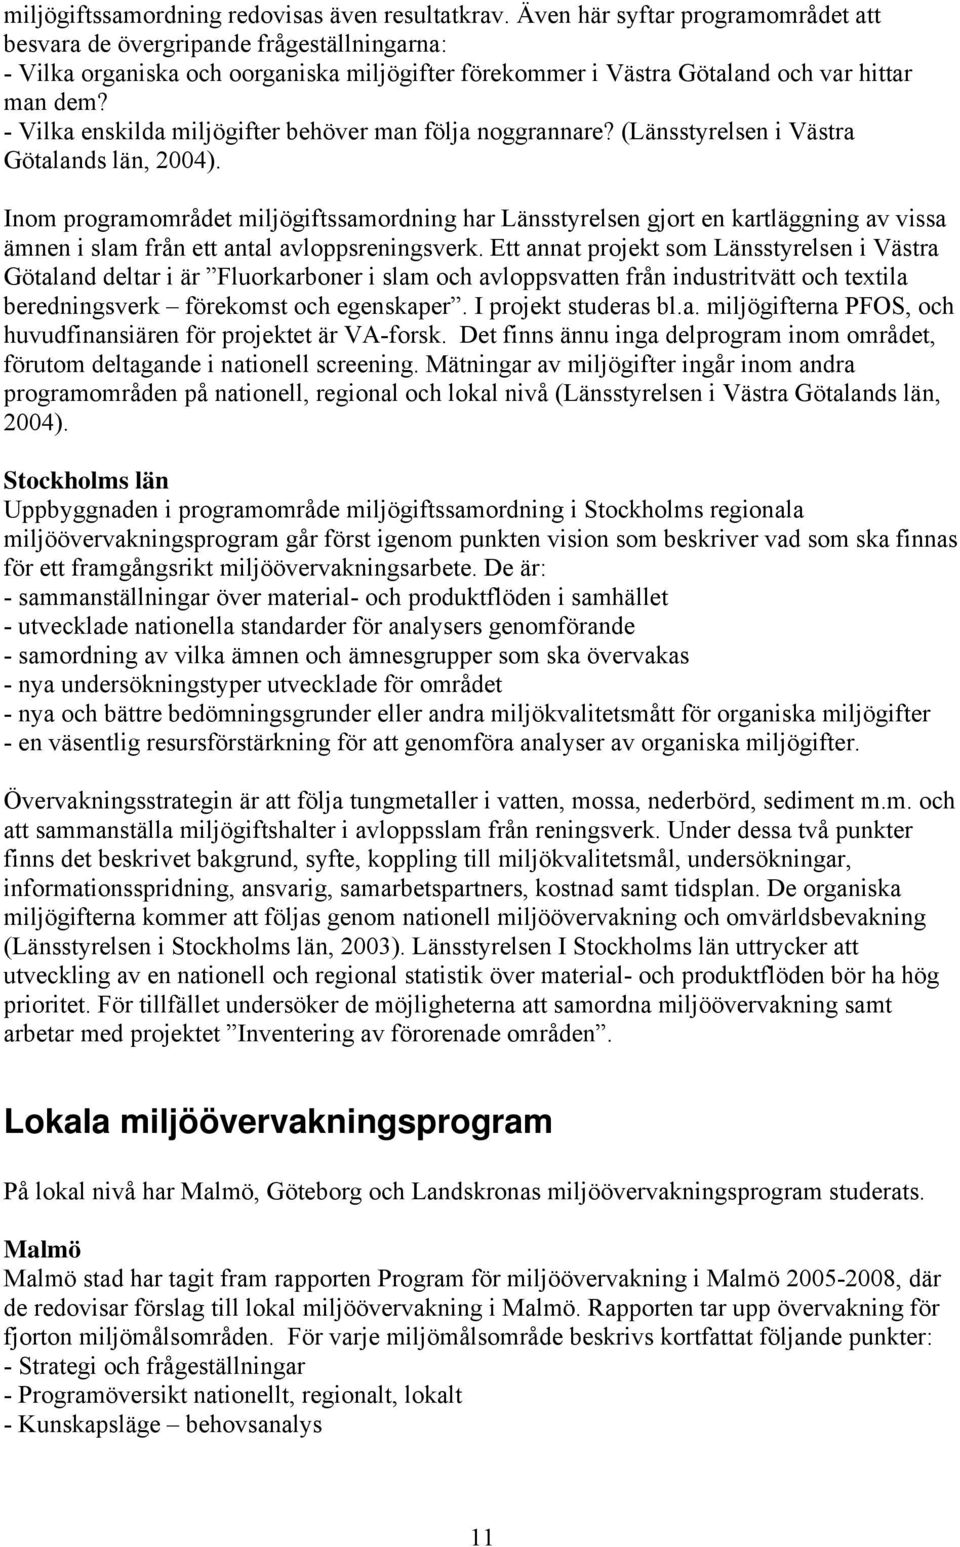 - Vilka enskilda miljögifter behöver man följa noggrannare? (Länsstyrelsen i Västra Götalands län, 2004).